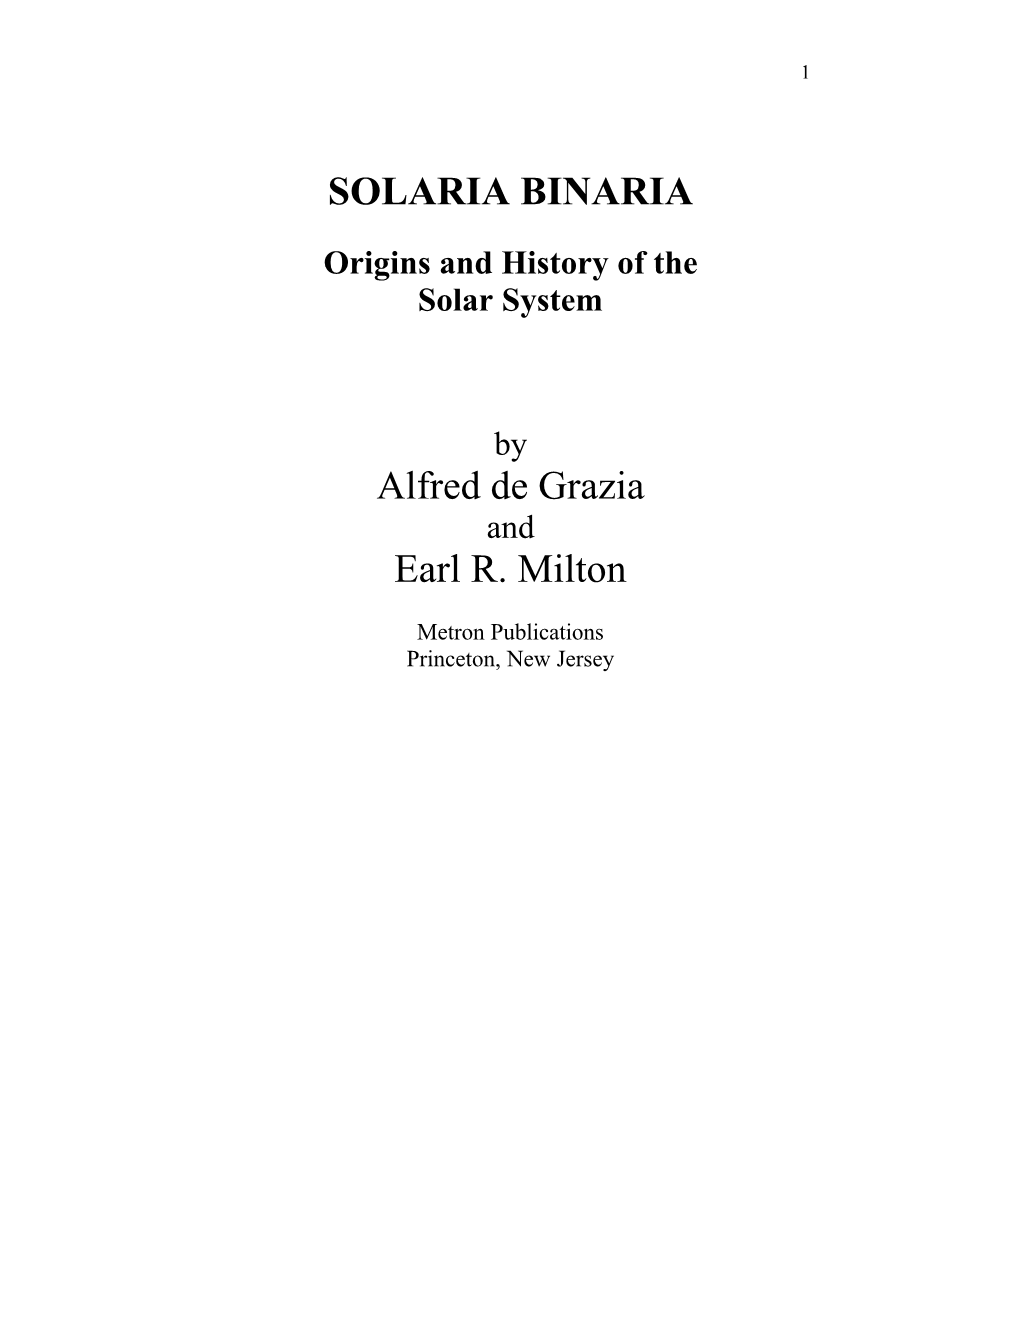 SOLARIA BINARIA Alfred De Grazia Earl R. Milton